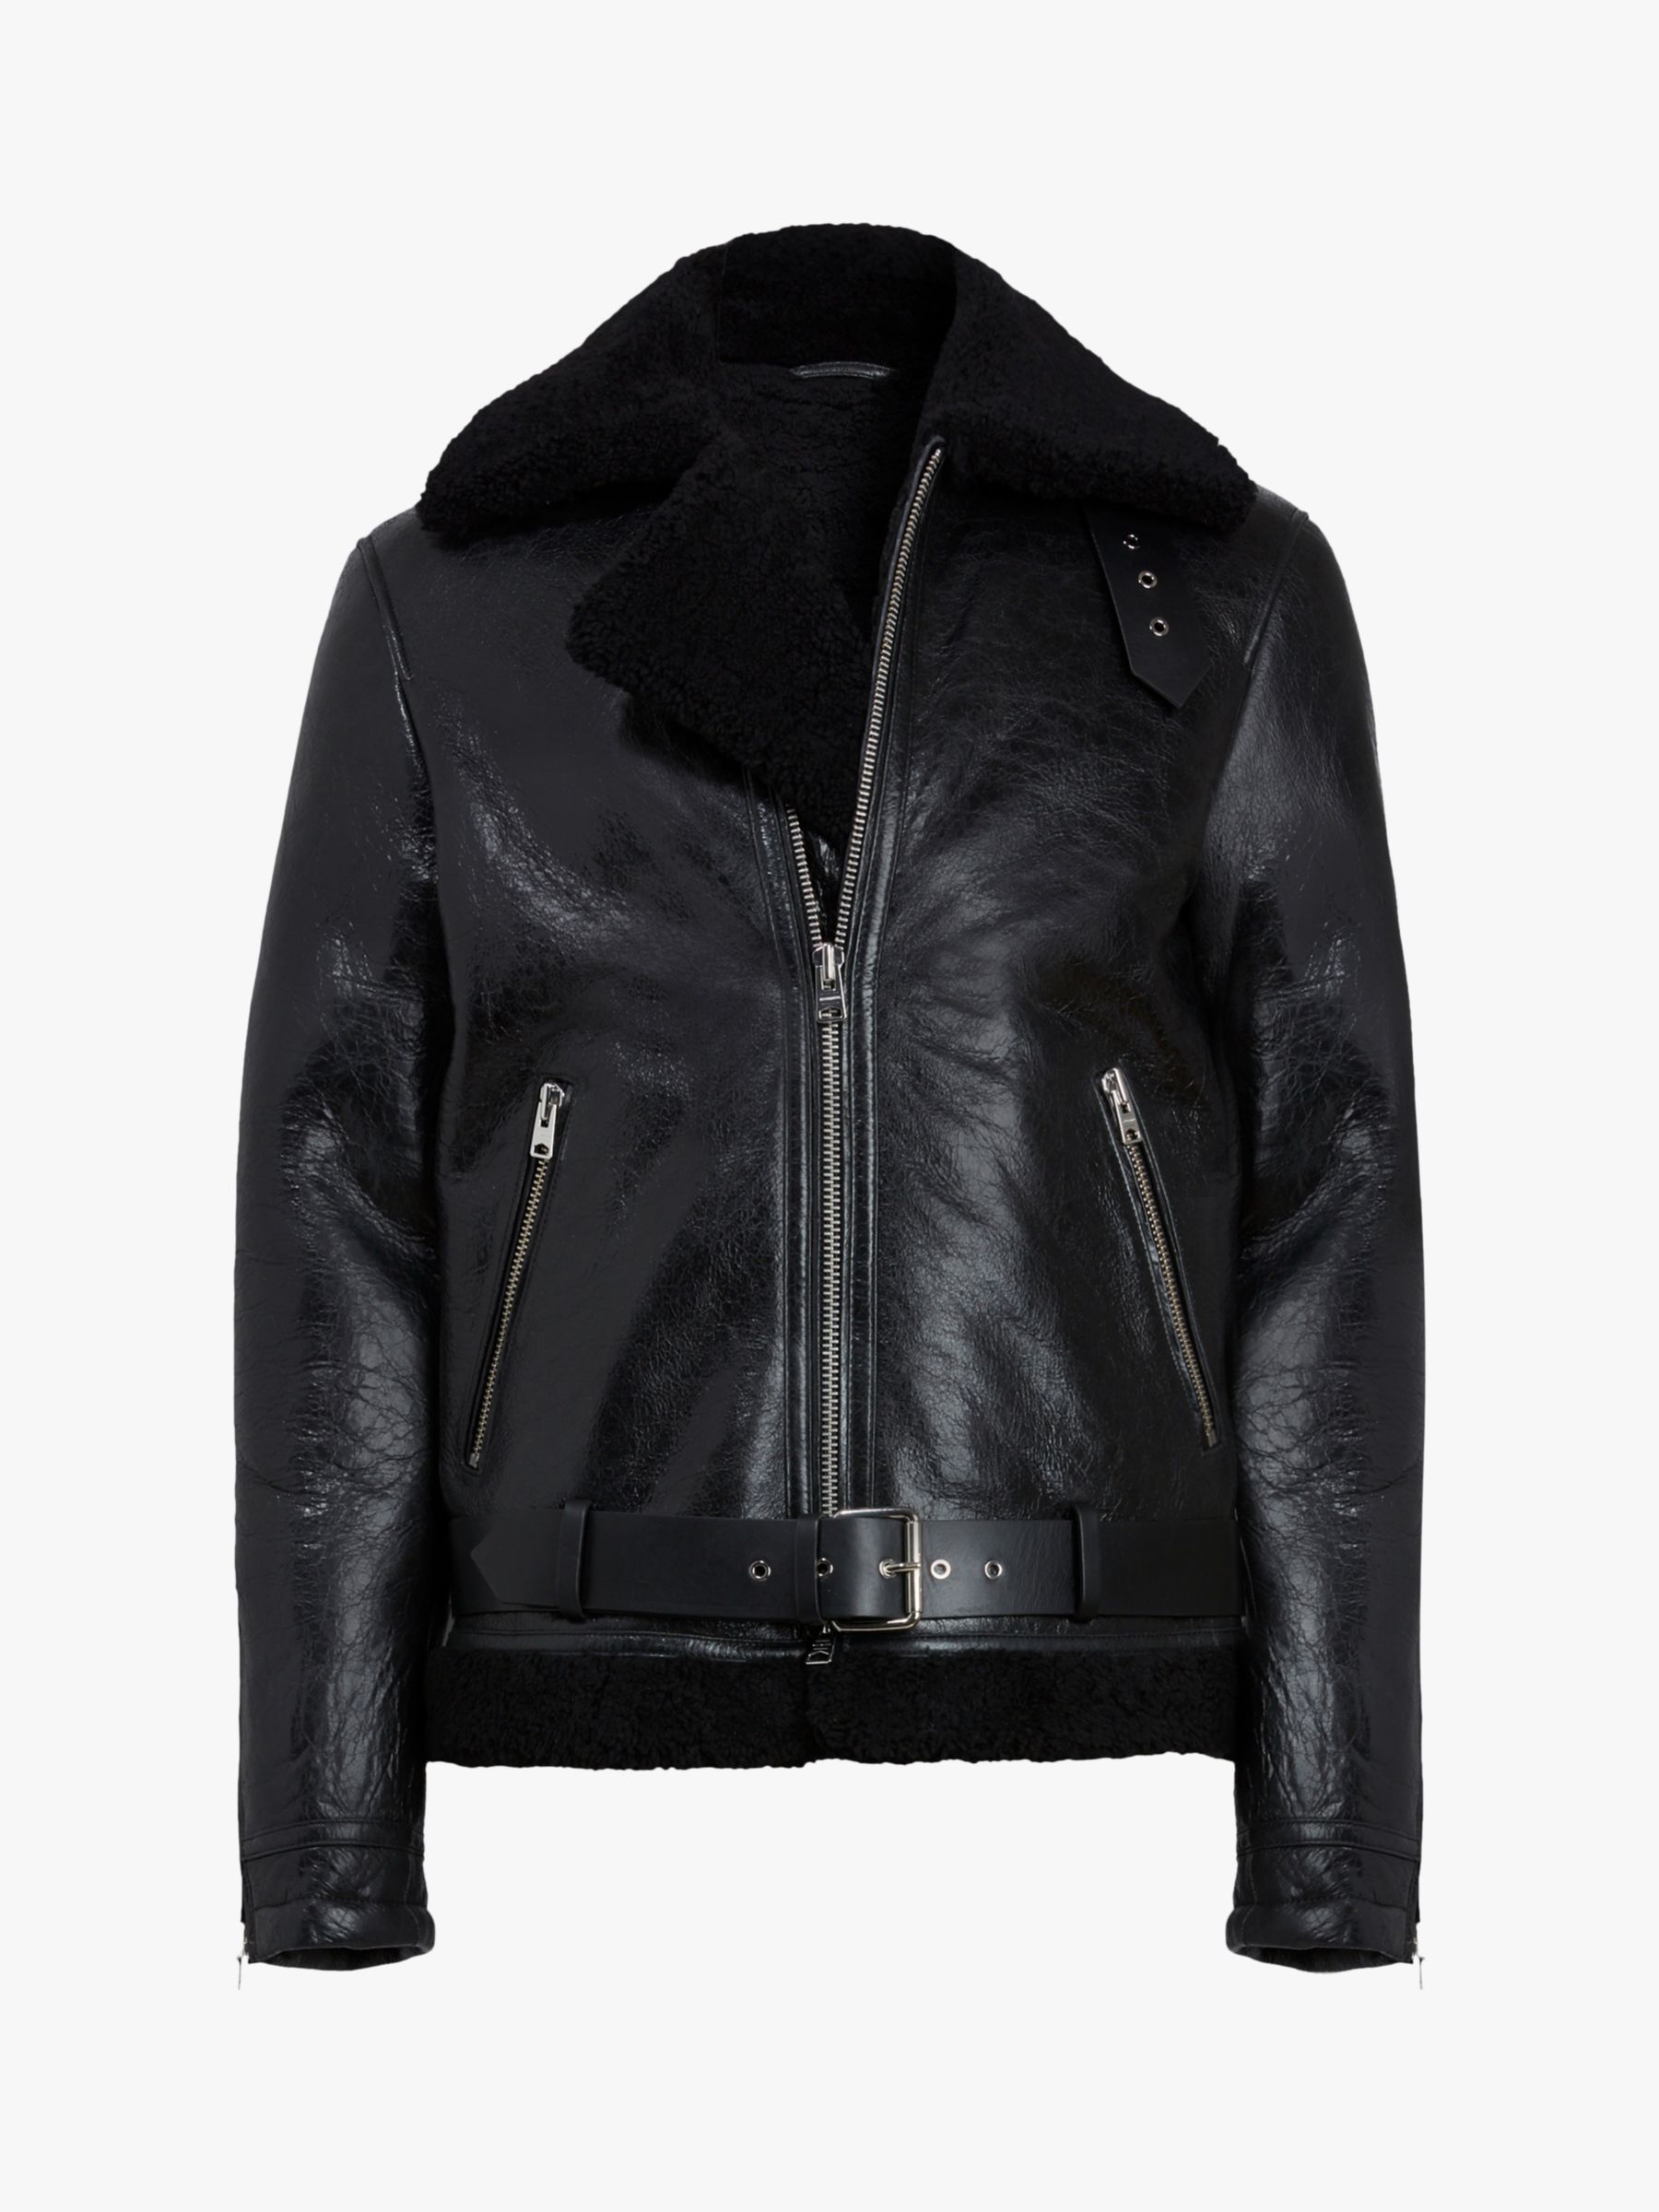 AllSaints Felix Shearling Leather Jacket, Black, XXL